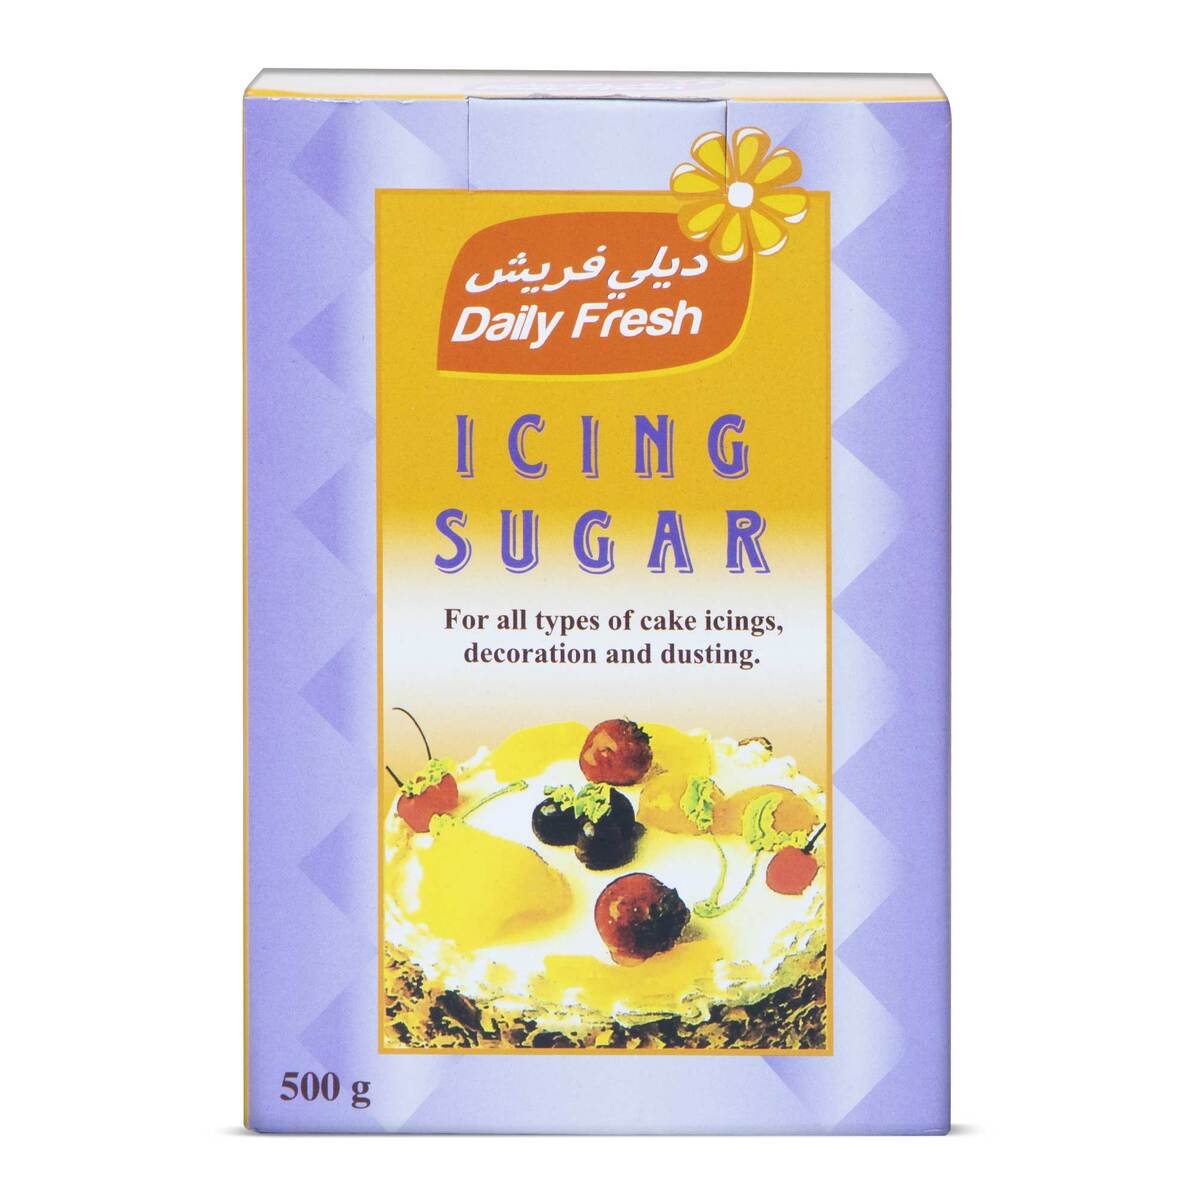 Daily Fresh Icing Sugar 500g